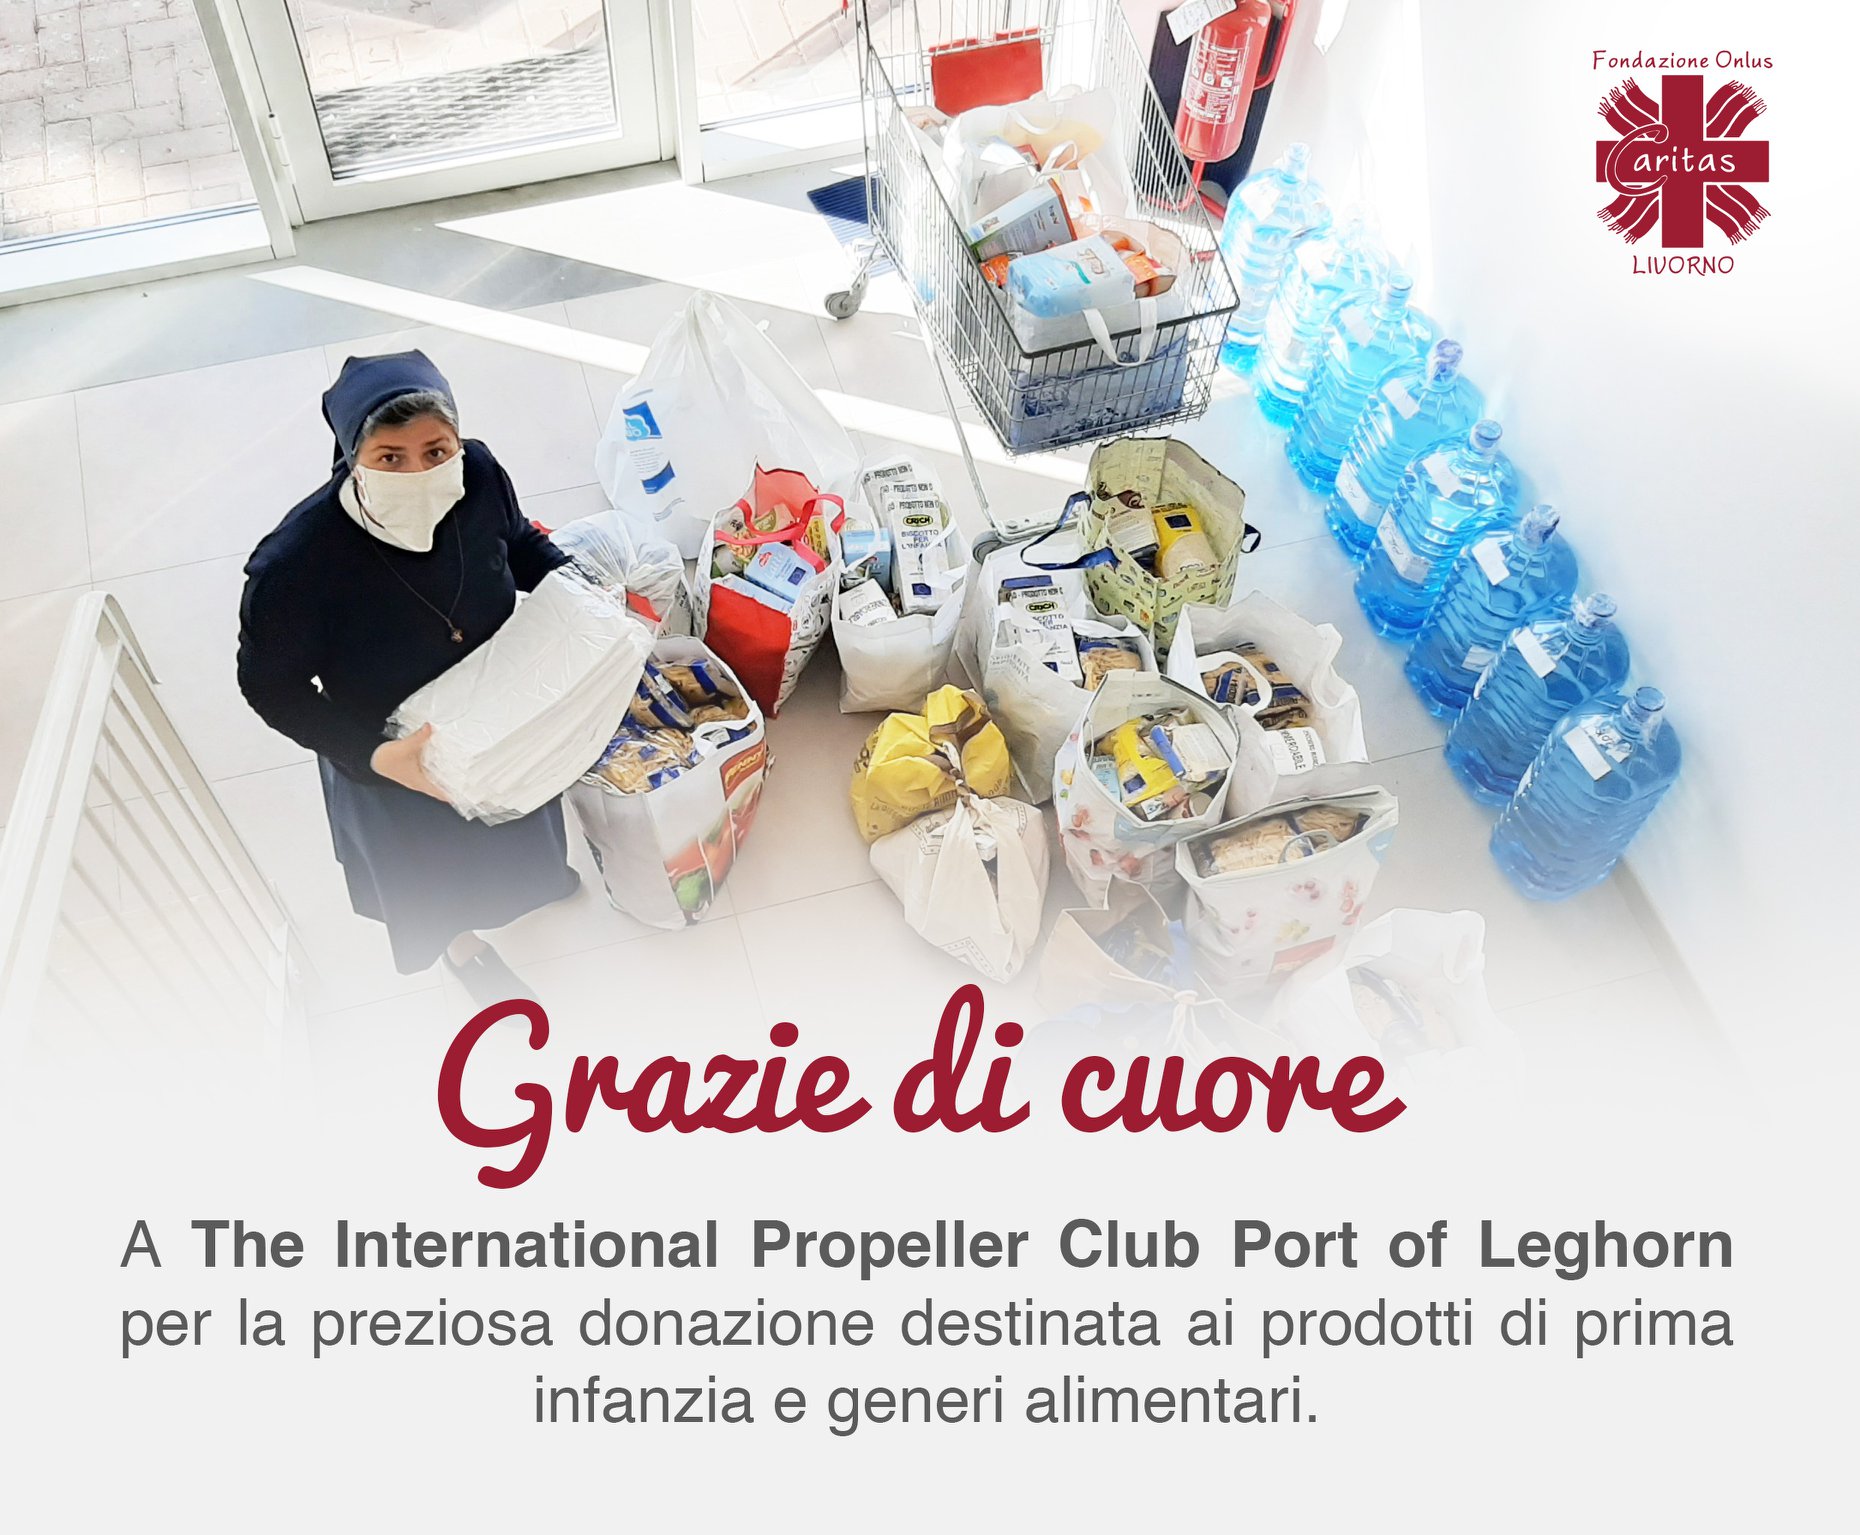 Grazie di cuore a “The International Propeller Club Port of Leghorn”